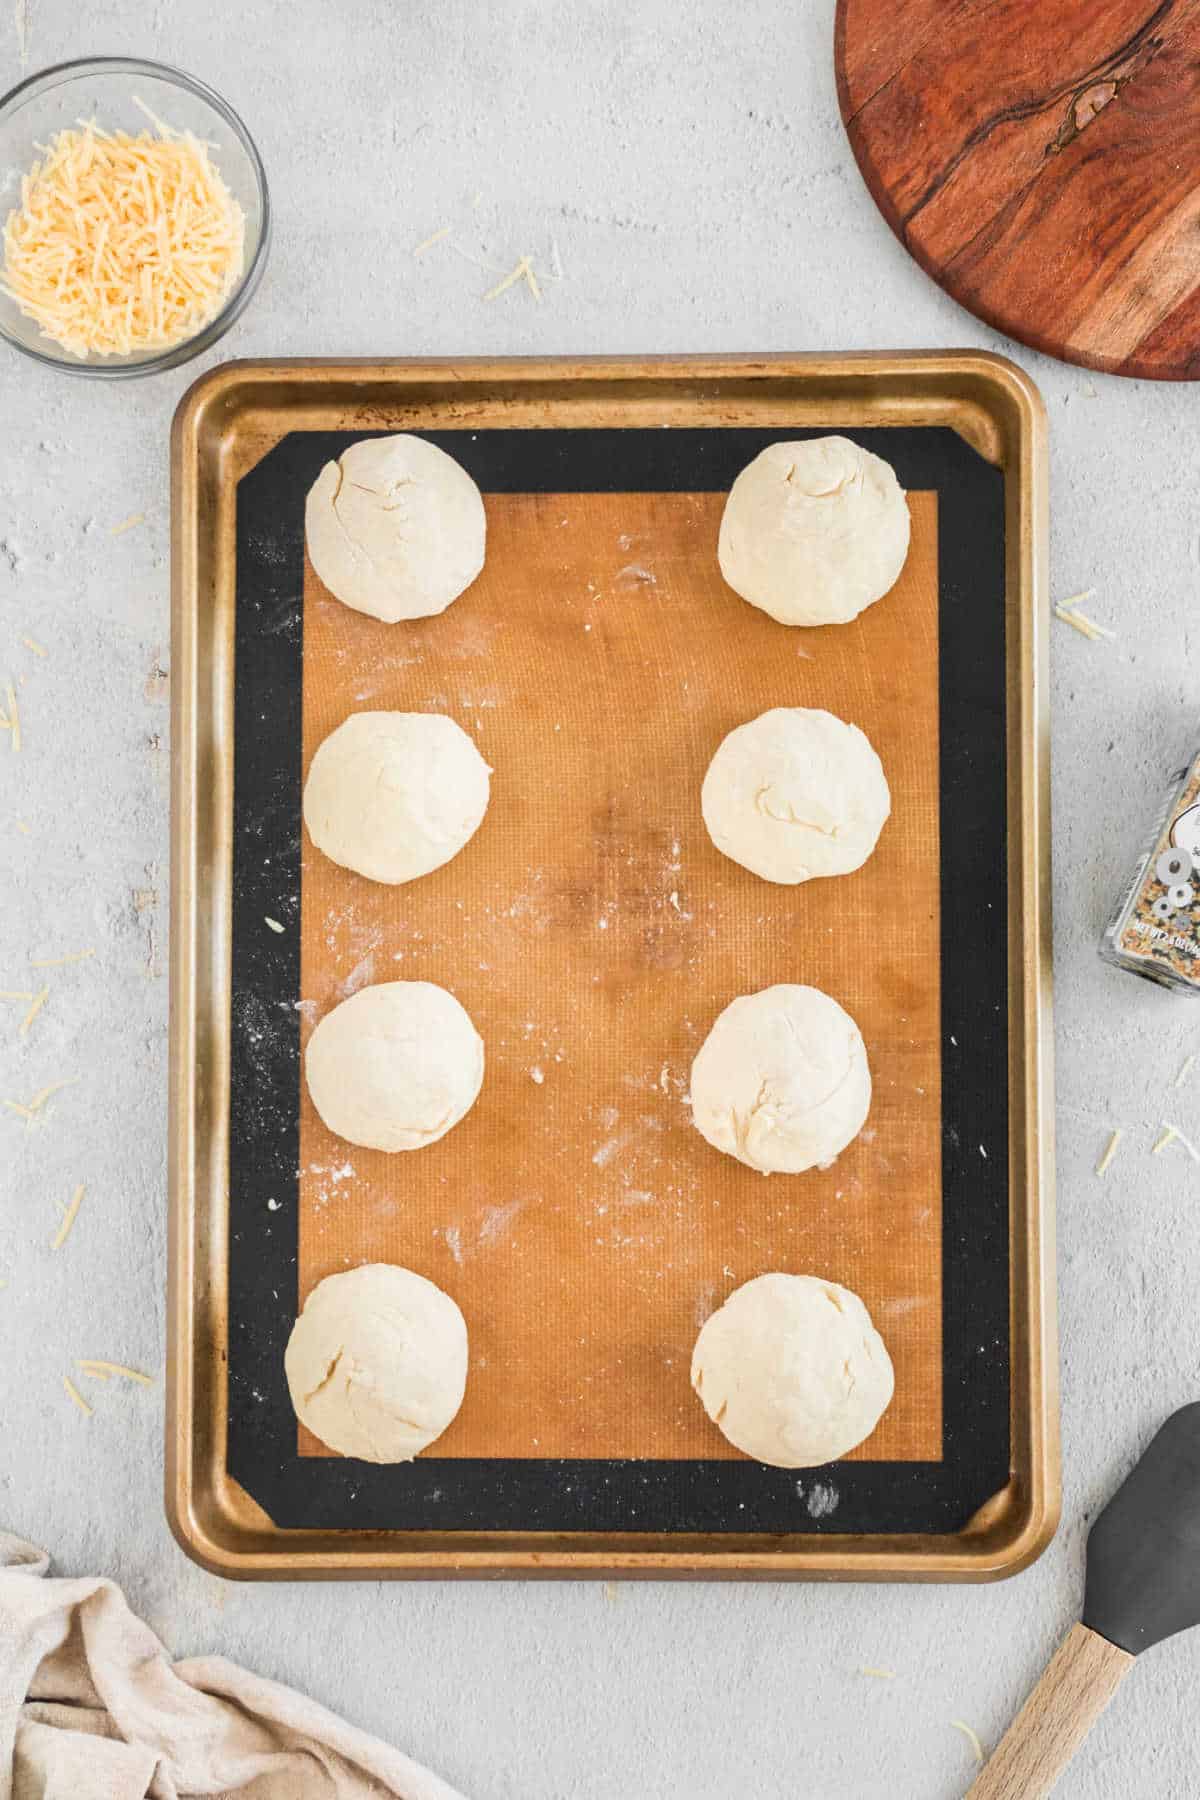 Eight balls of bagel dough on a baking sheet. 